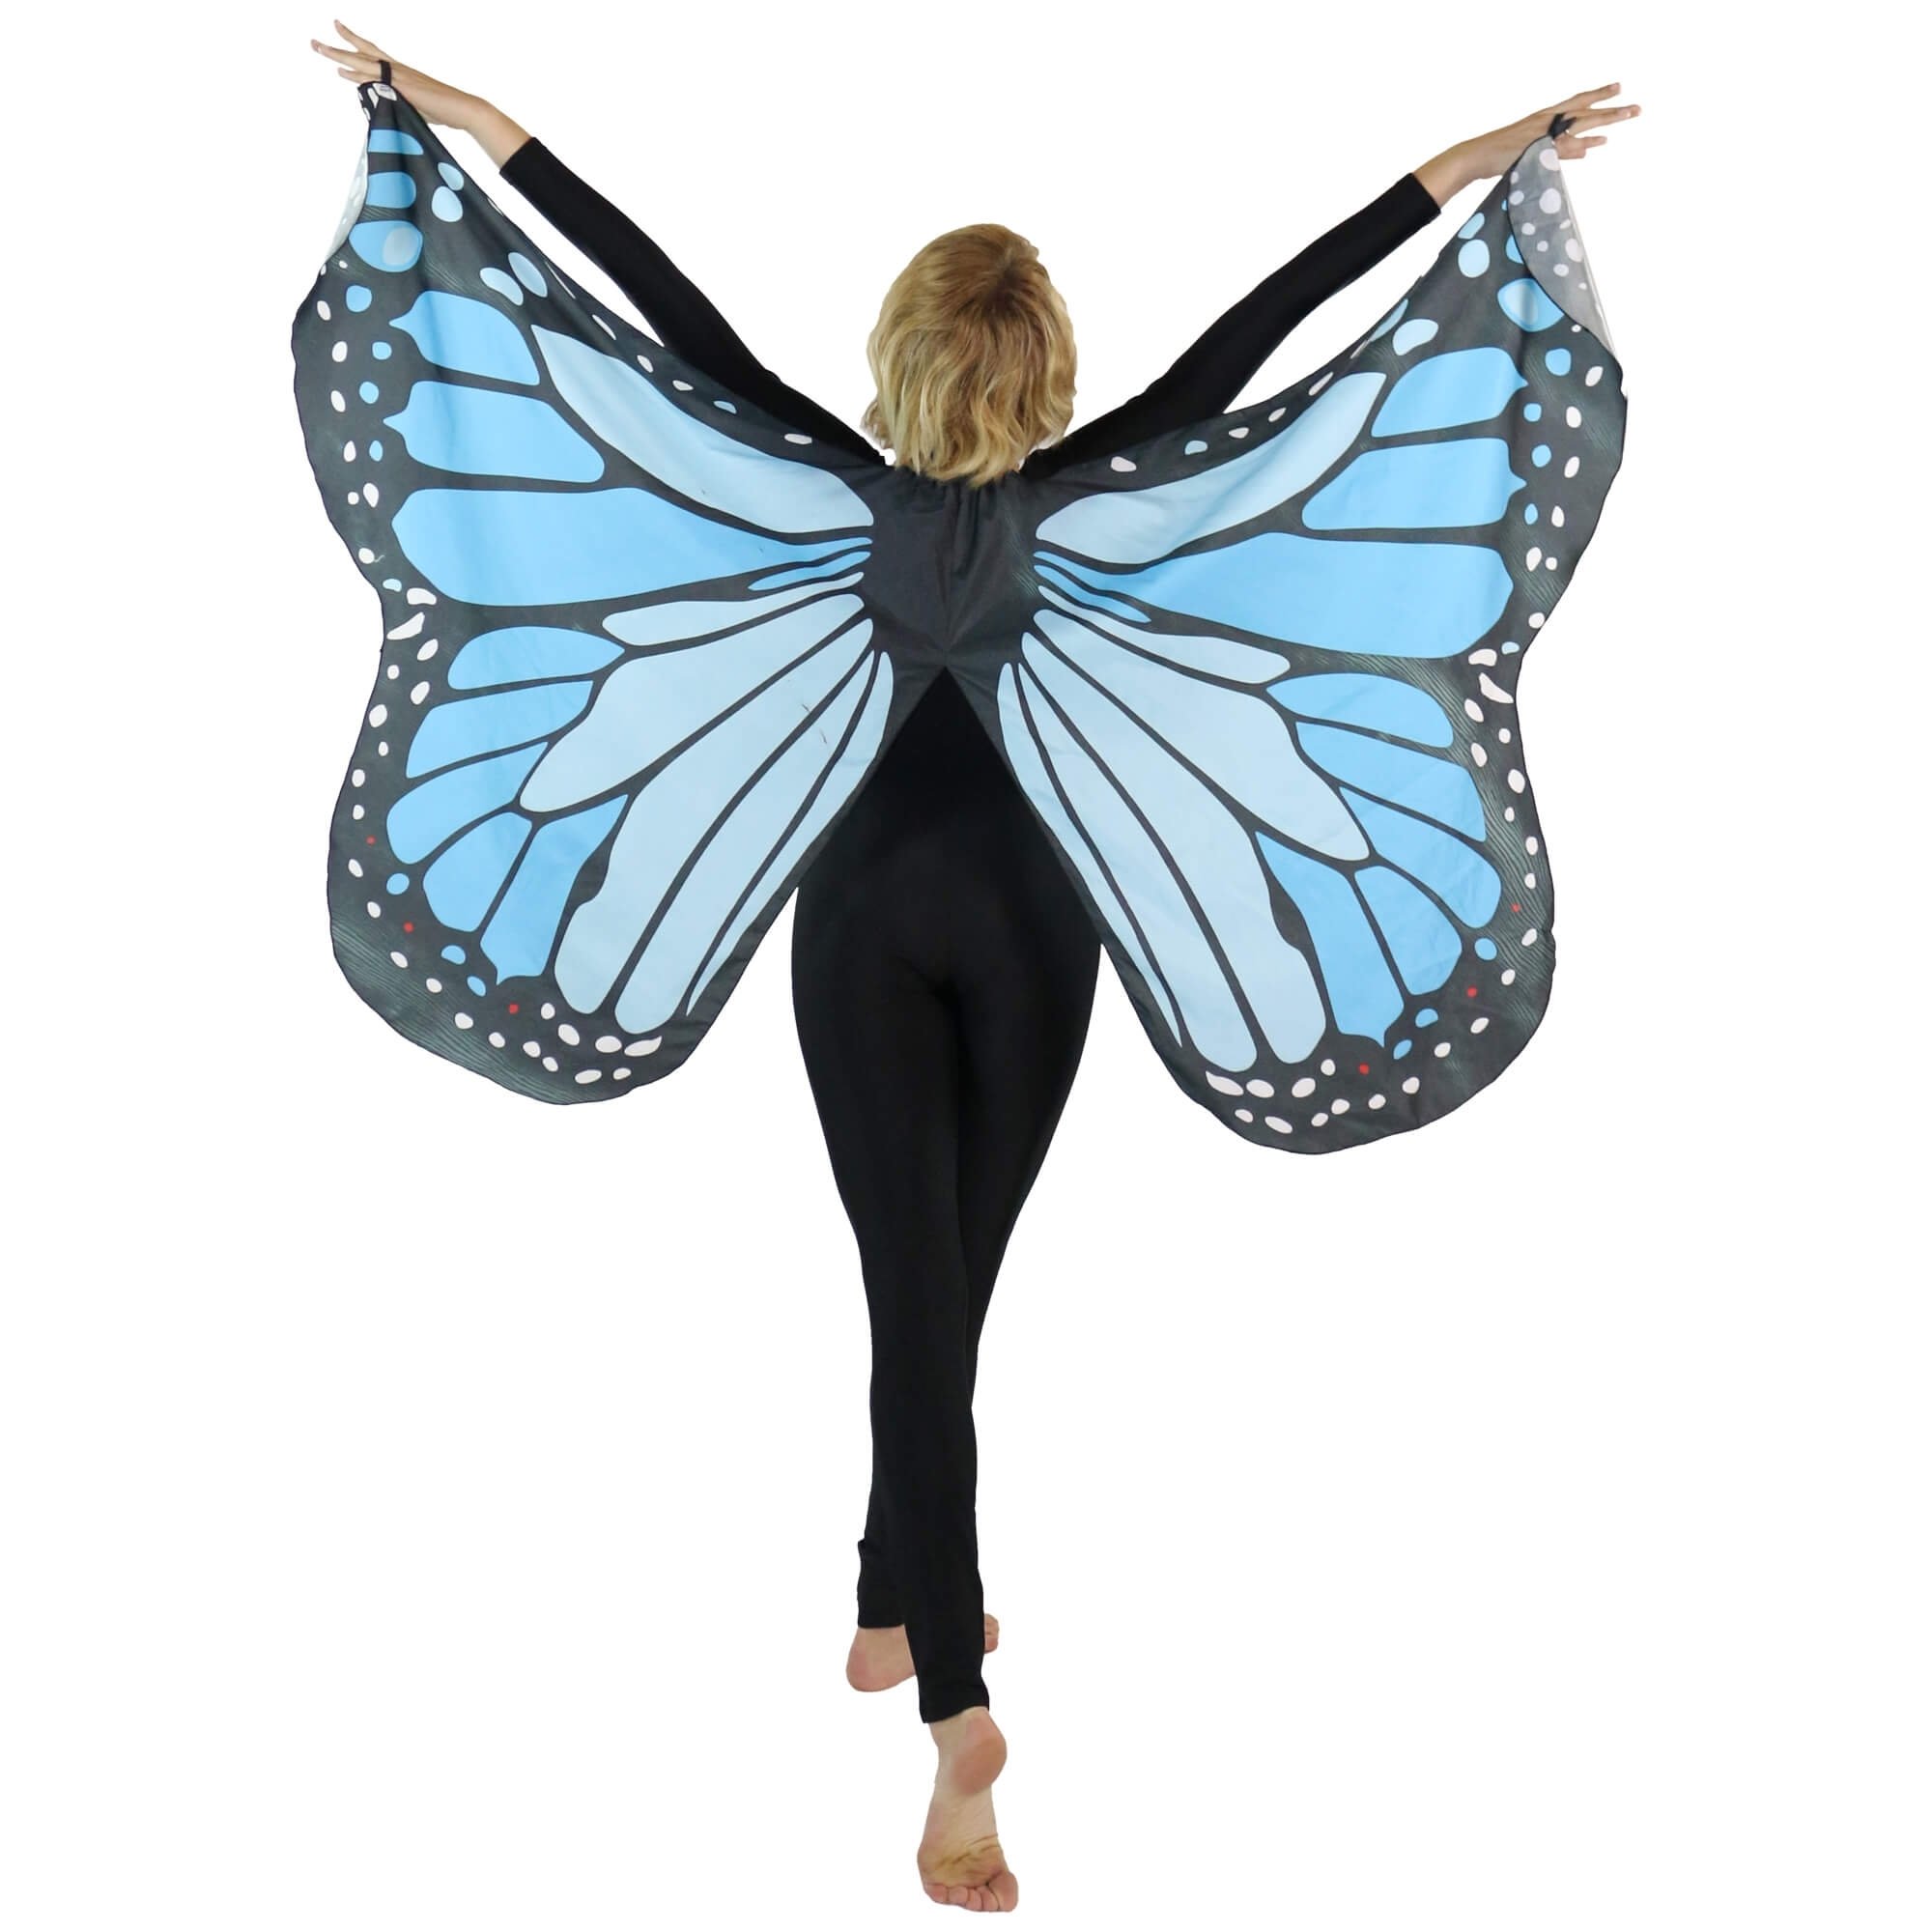 Danzcue Soft Butterfly Dance Wings